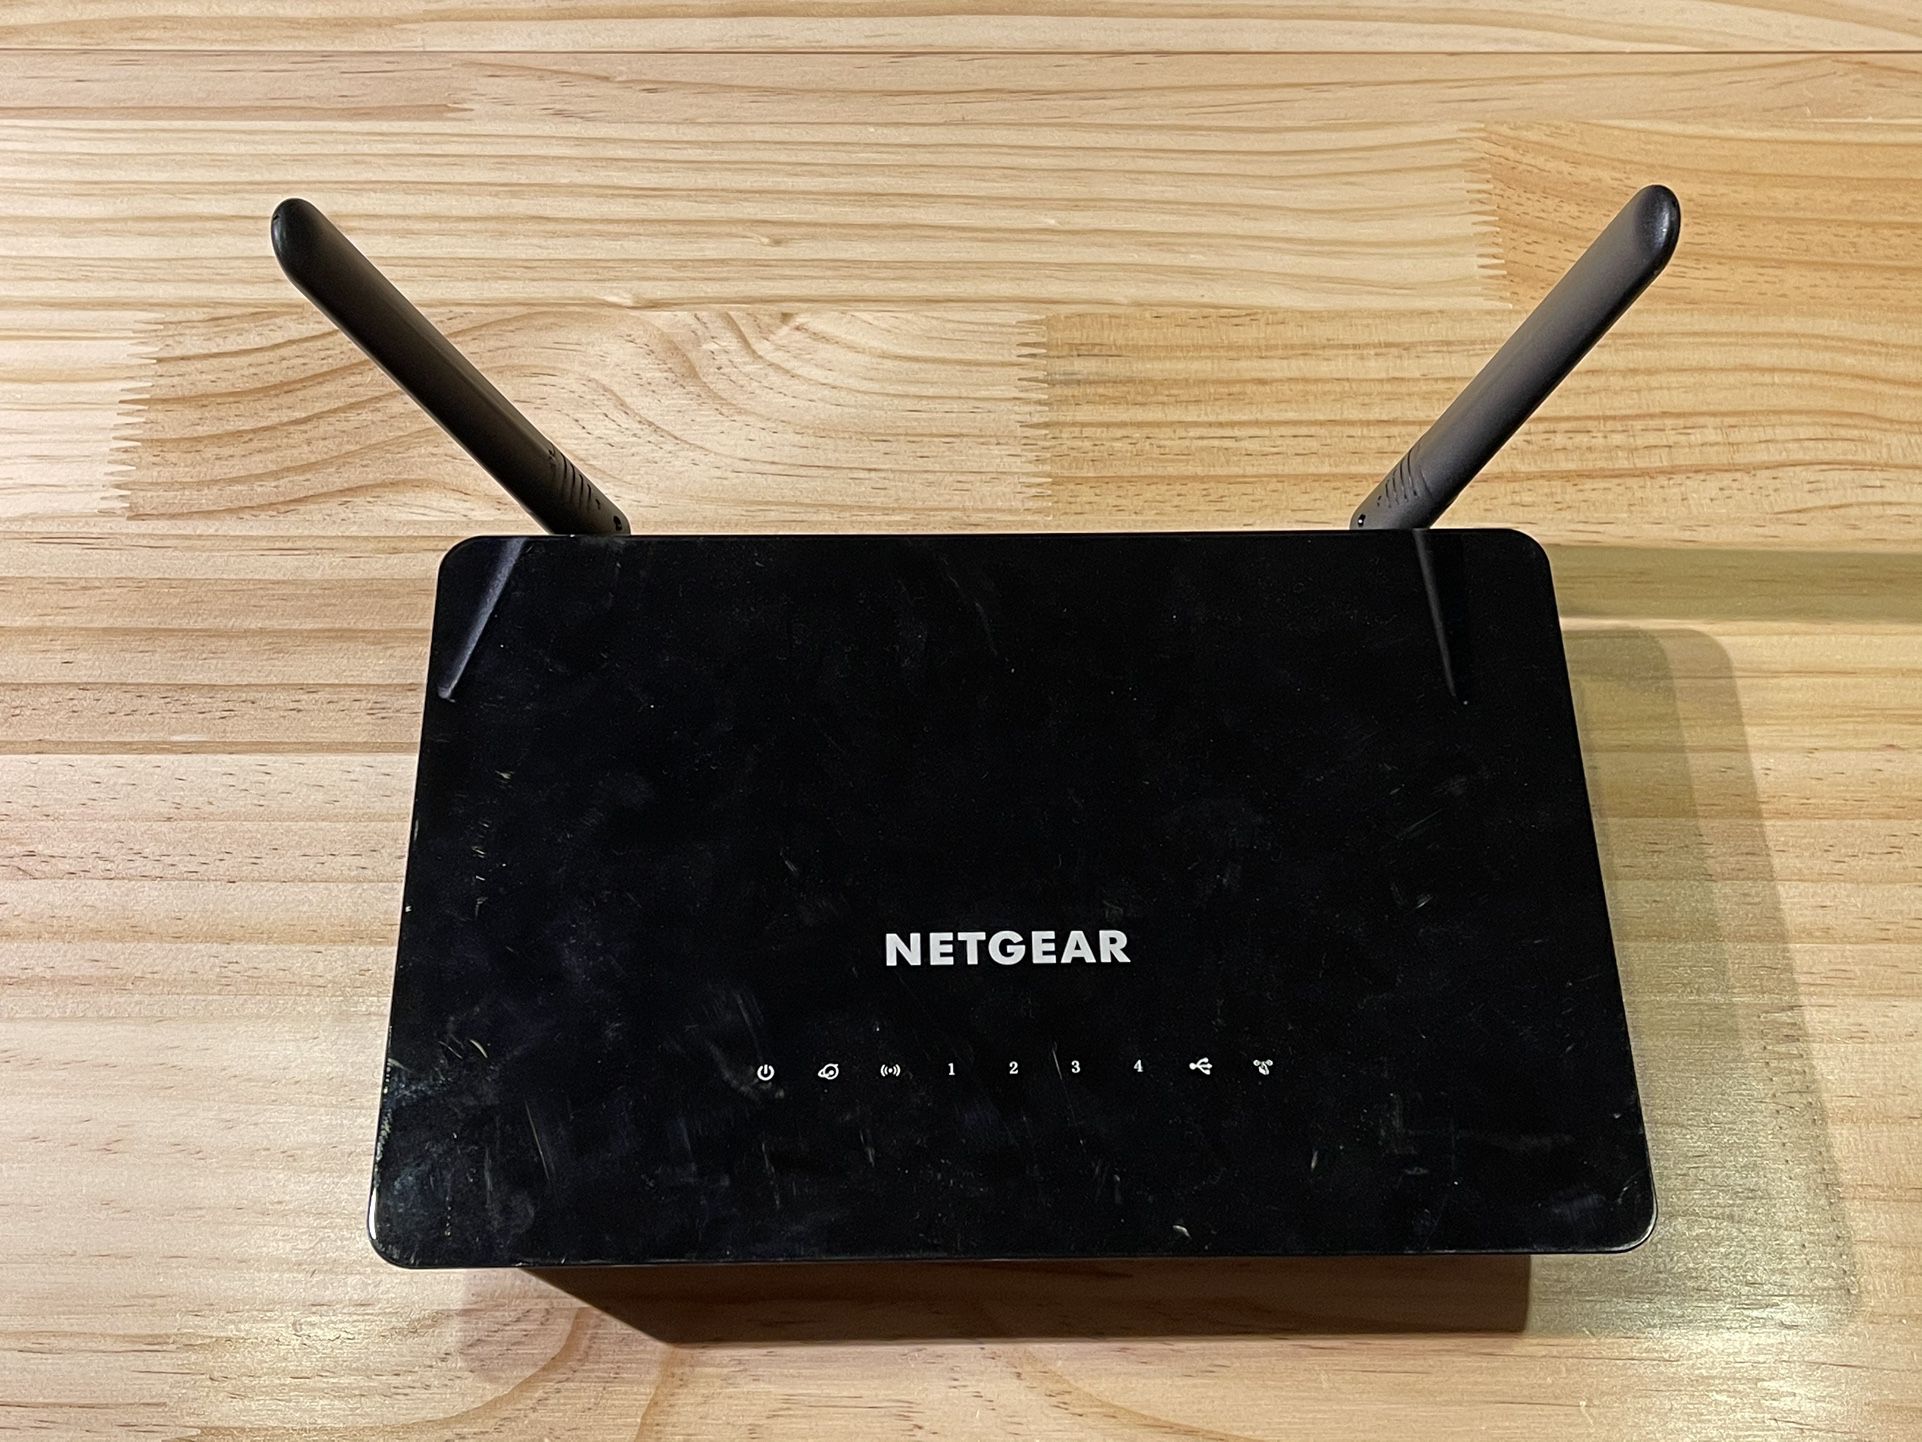 Netgear AC 1200 Smart Wifi Router Model R6220